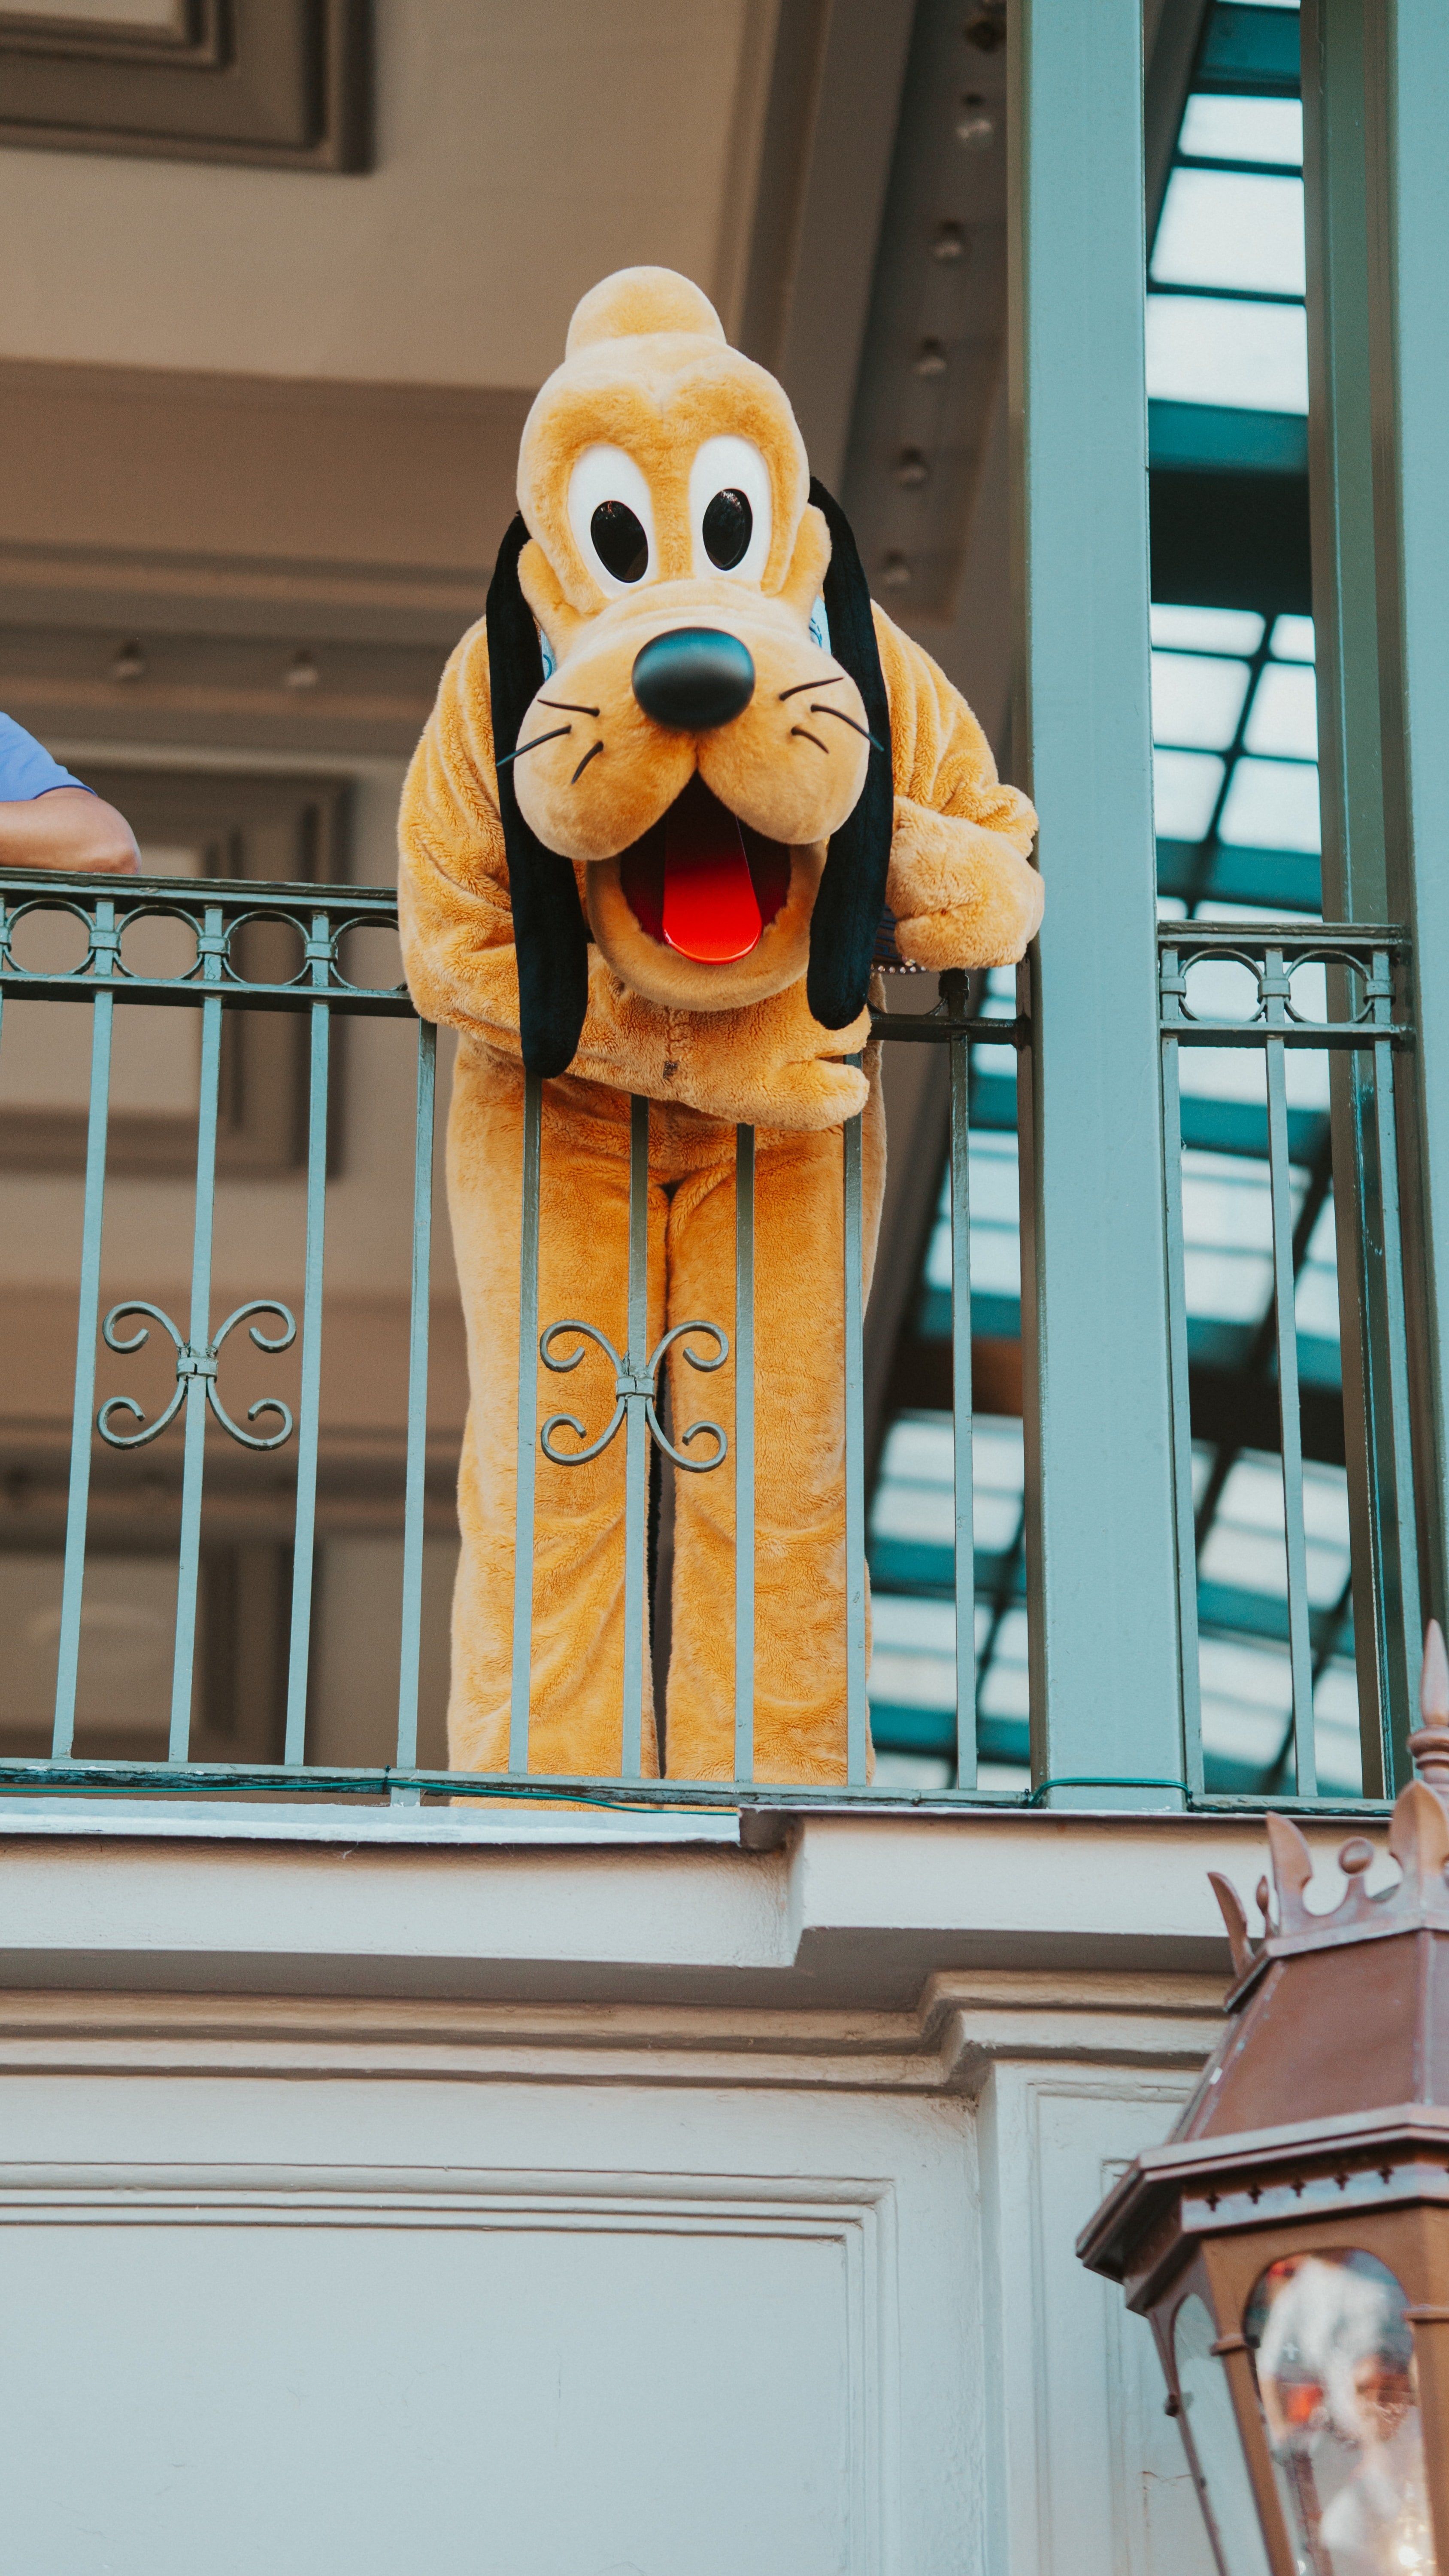 A Pluto character greets visitors at Disneyland. - Disneyland